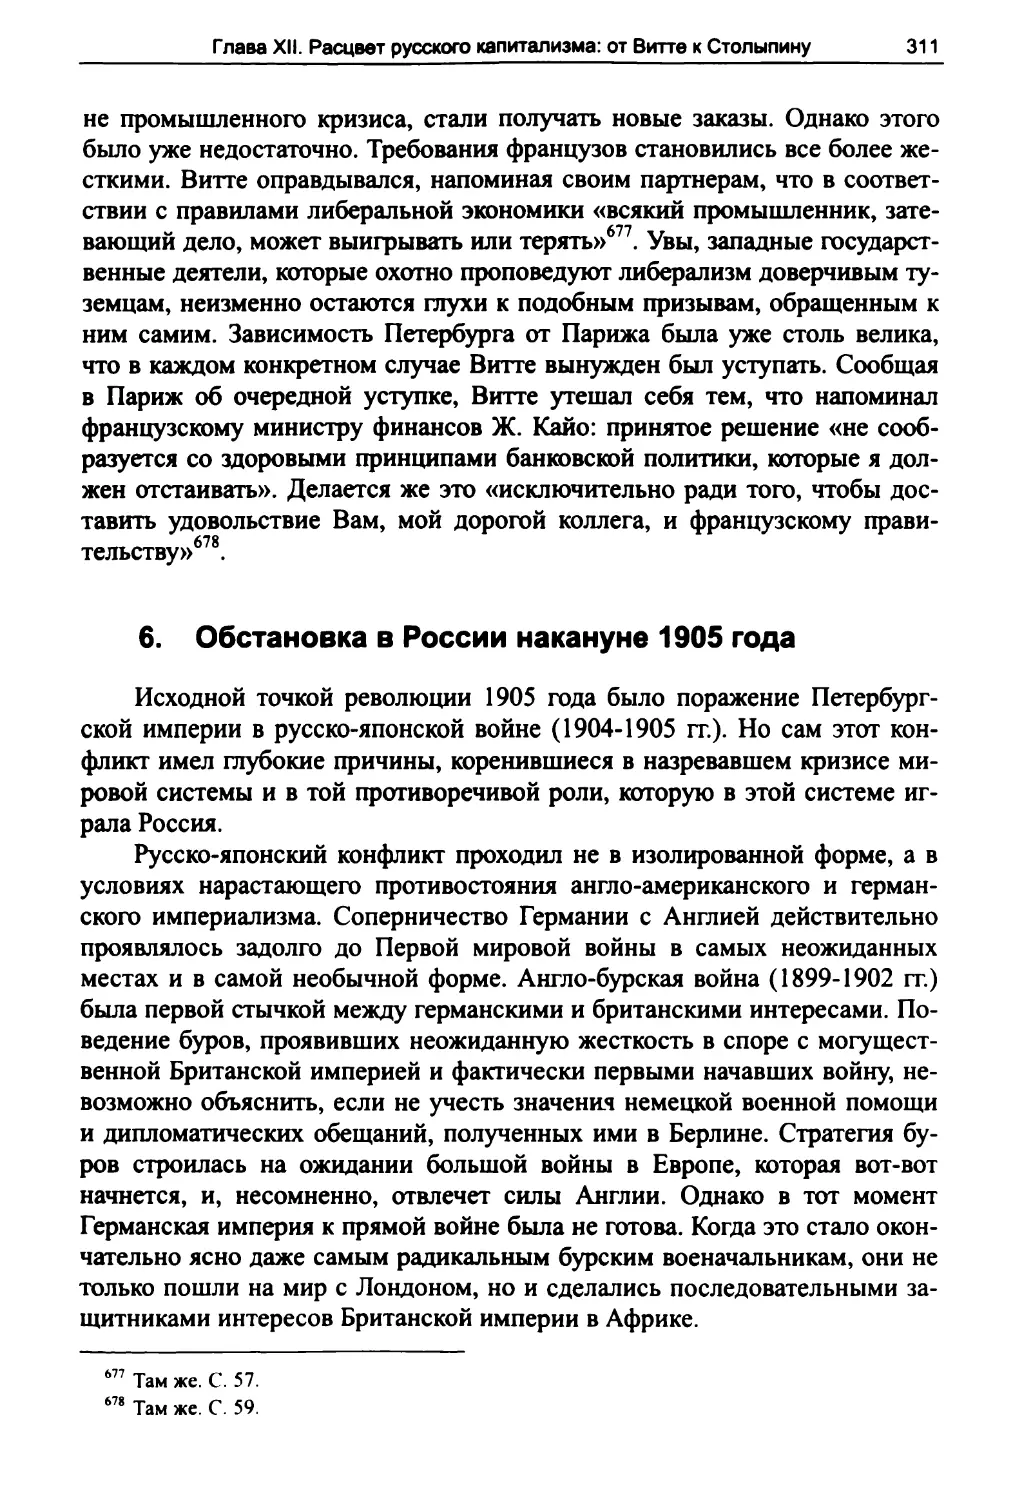 6. Обстановка в России накануне 1905 года